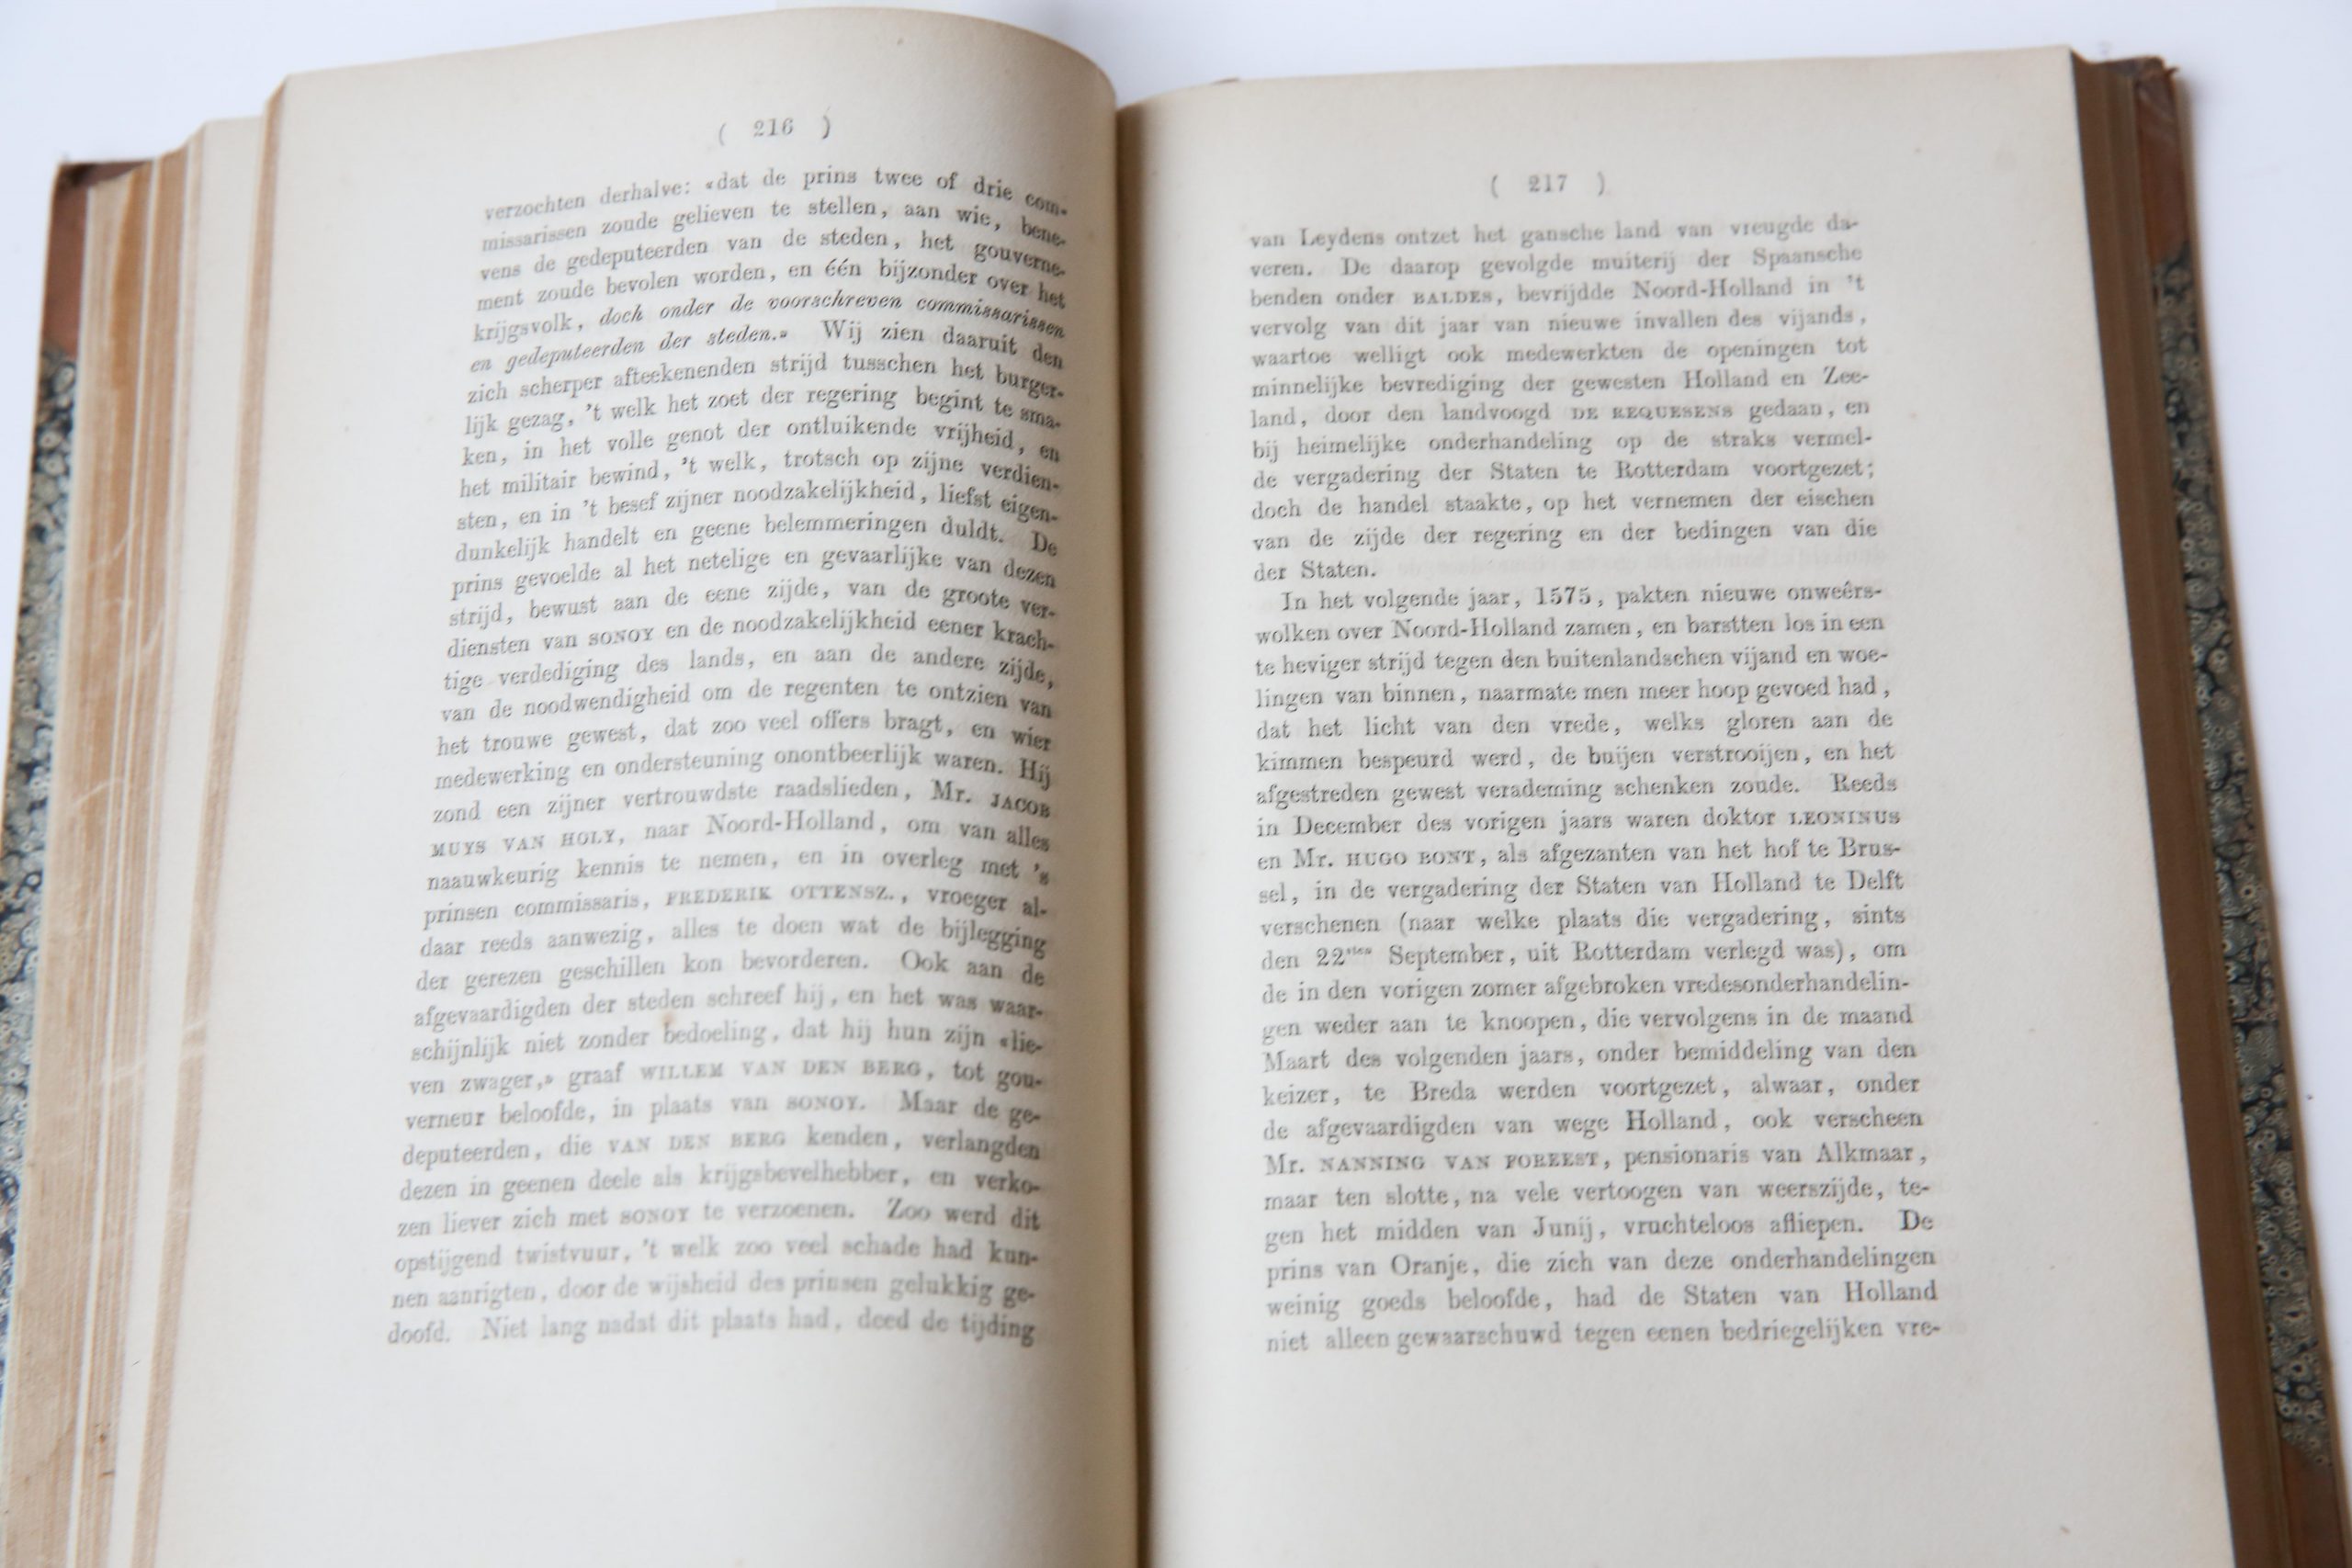 NOORD-HOLLAND en de NOORD-HOLLANDERS in den Vrijheidsoorlog tegen Spanje, Erven F. Böhn Haarlem 1852, 400 pp. Half leather binding, good copy.